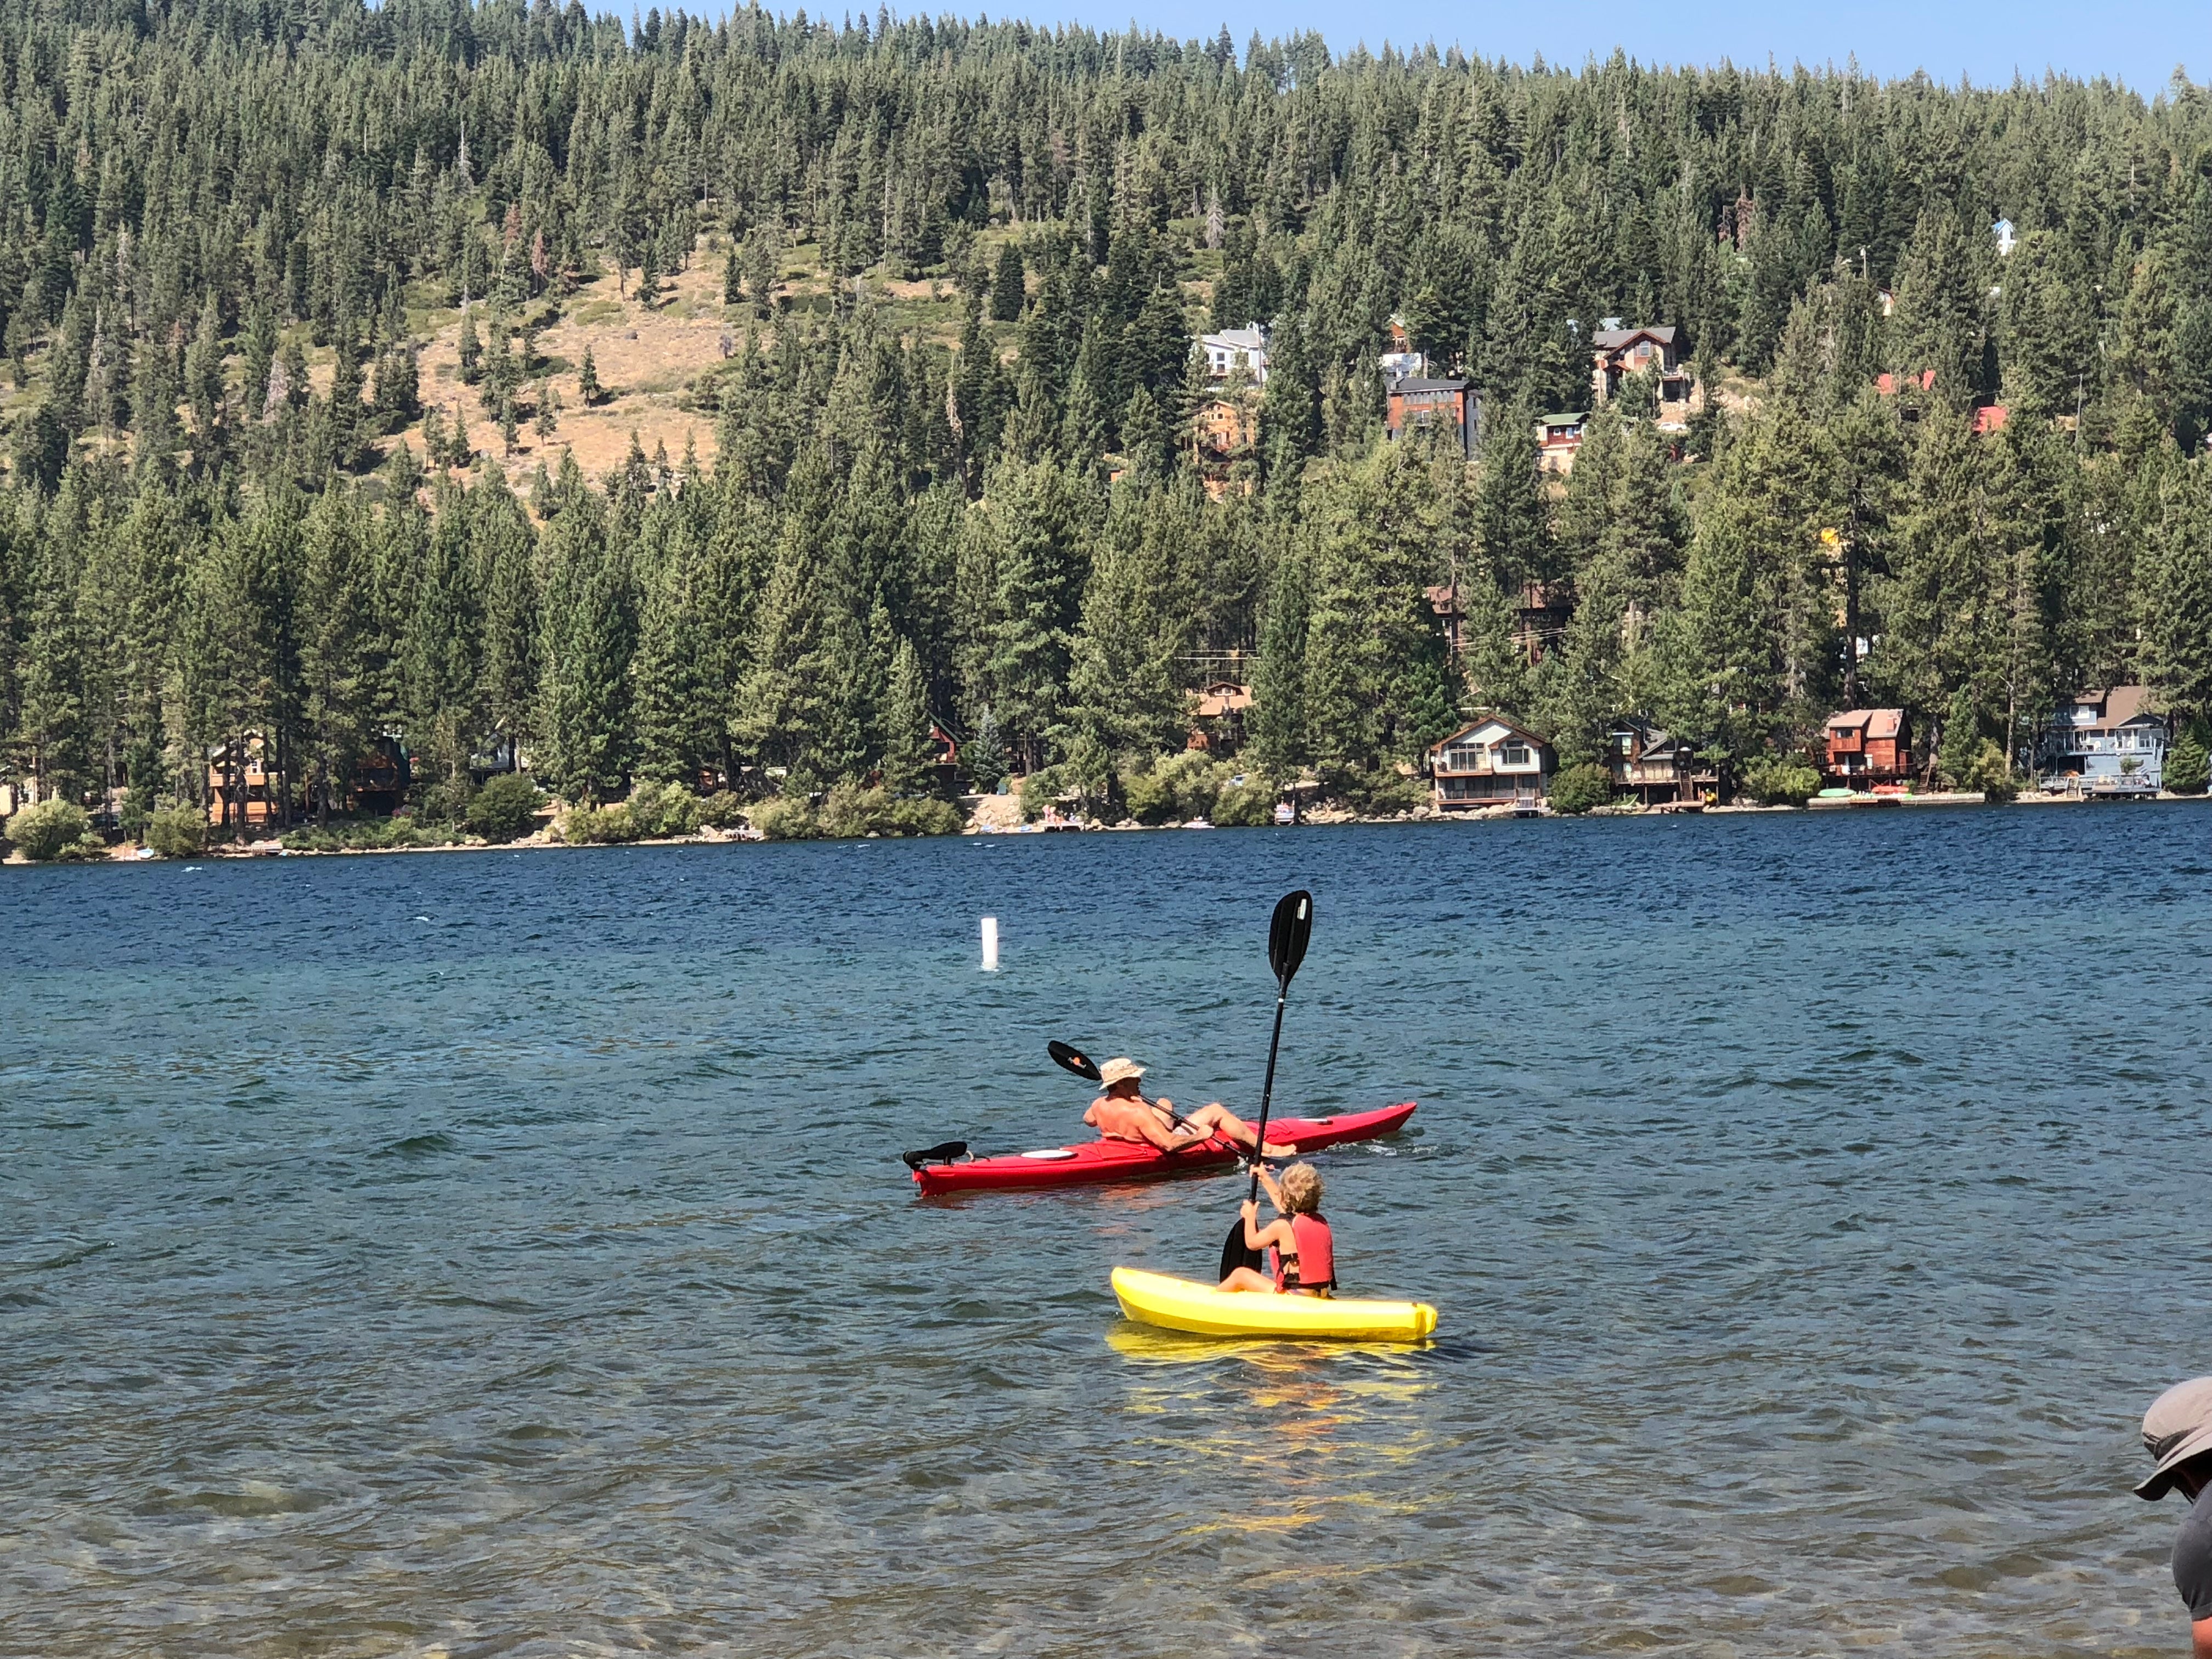 Great kayaking on Donner Lake